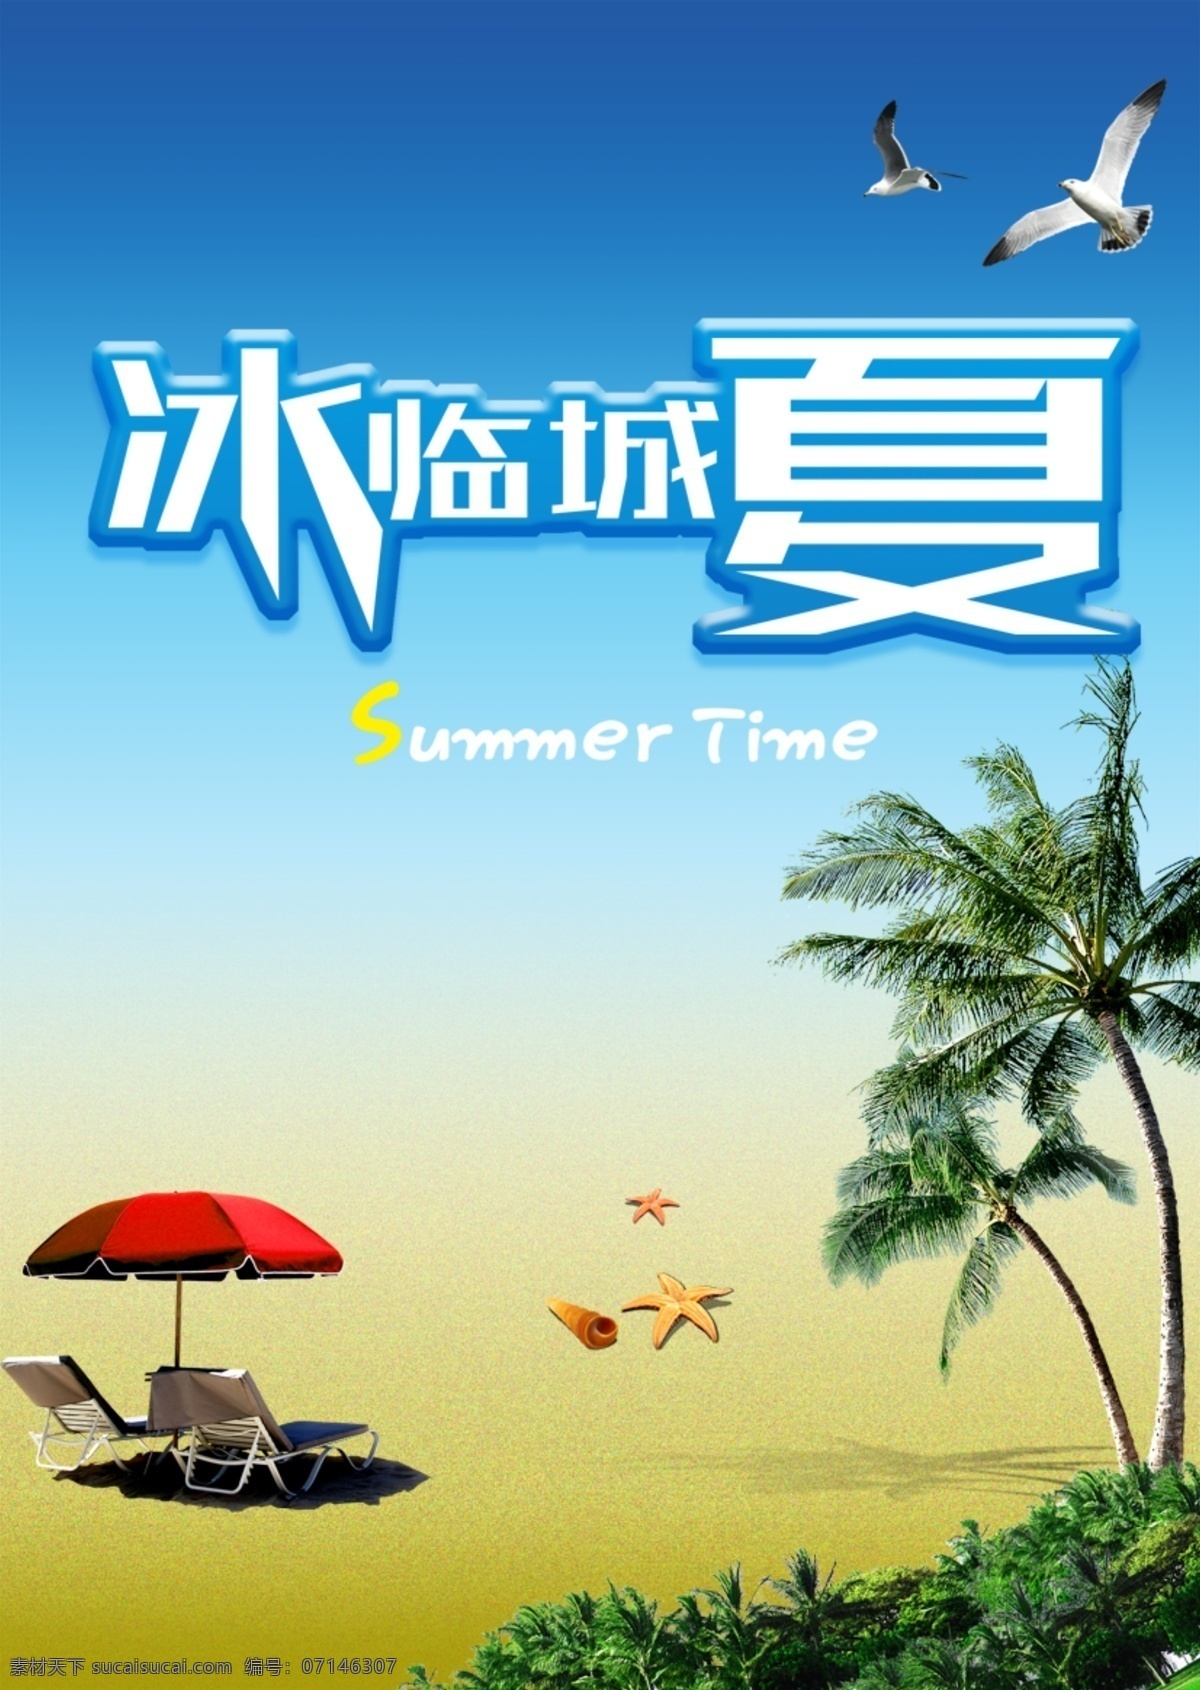 冰 临城 夏 冰爽 促销 沙滩 夏季促销 夏天 海报 原创设计 原创海报